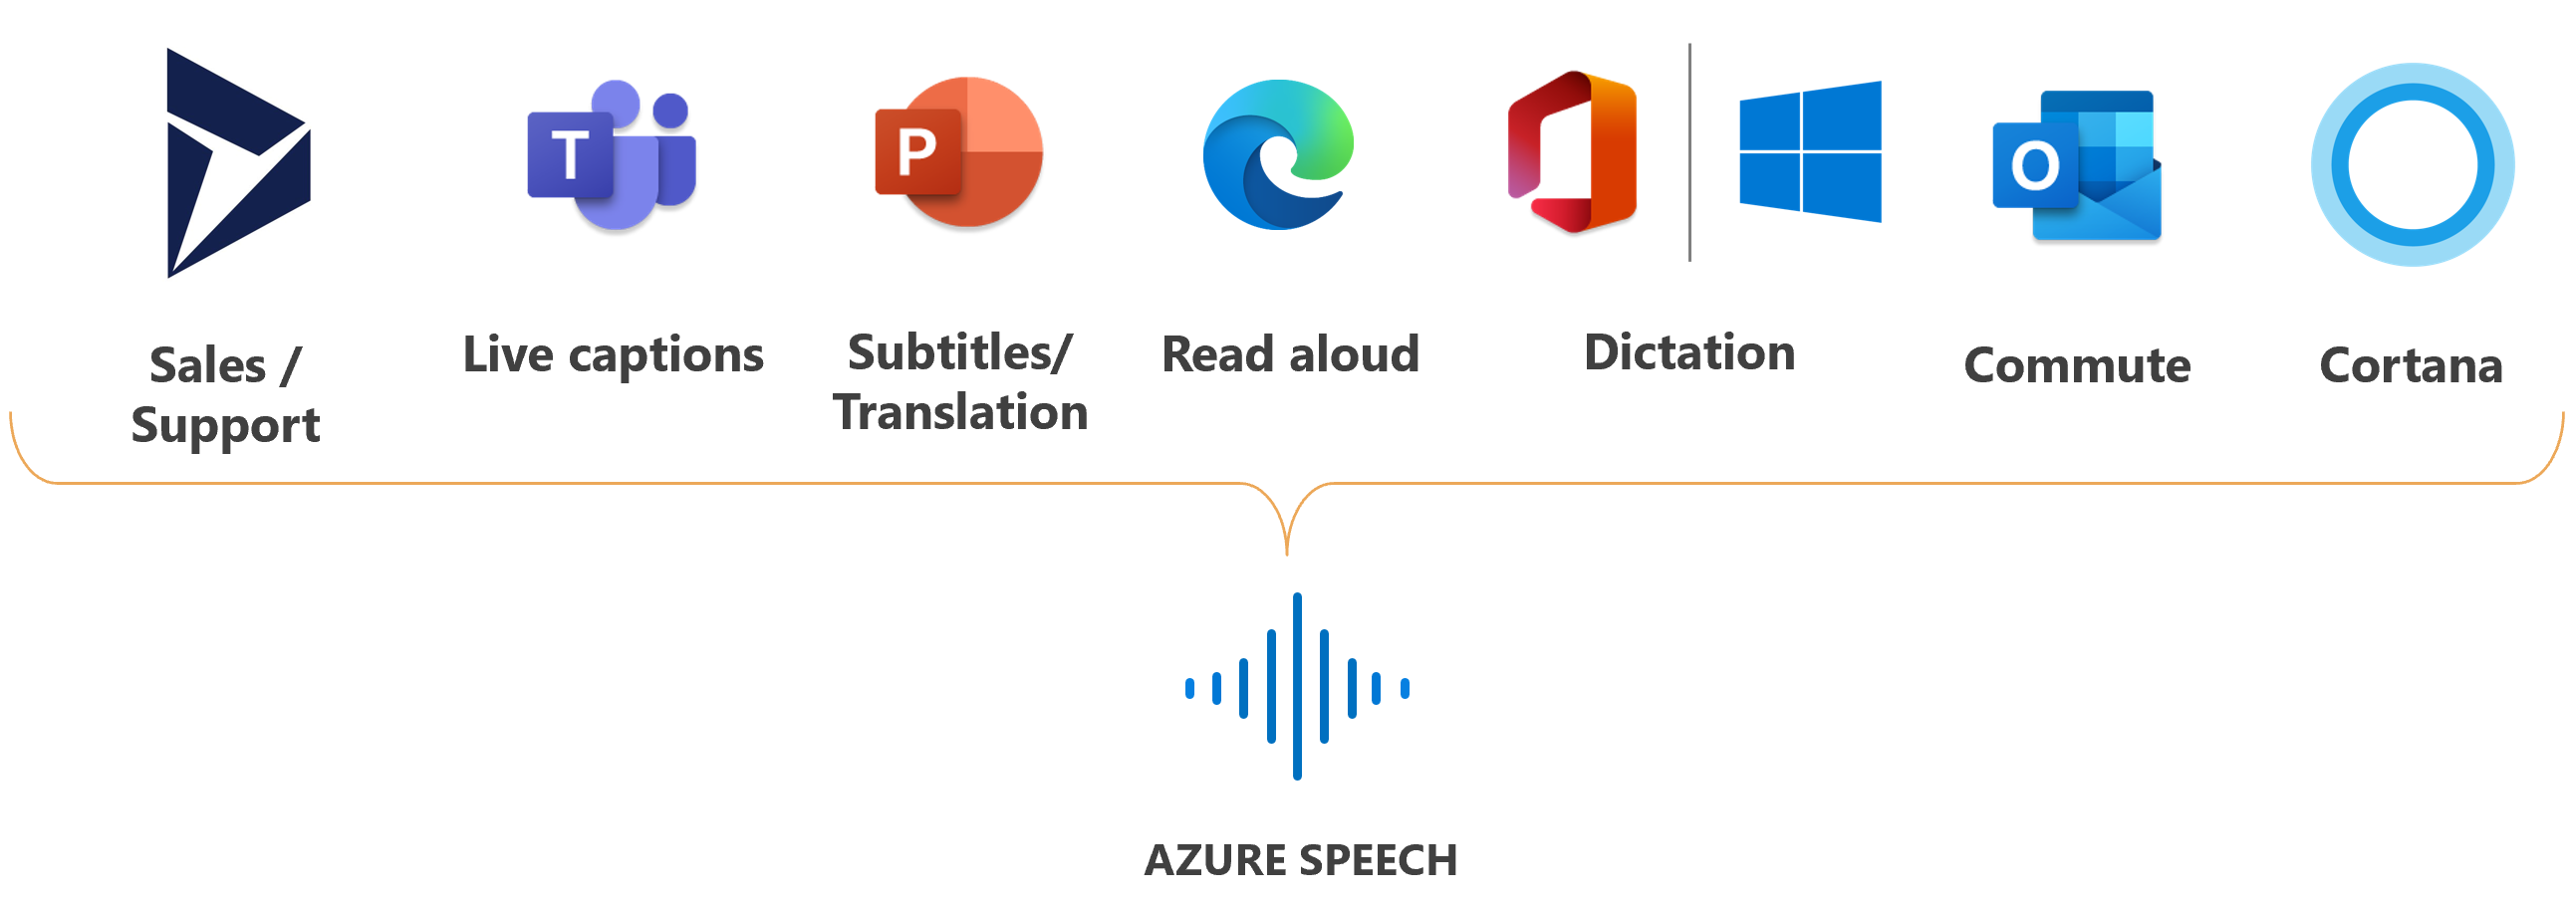 A Speech szolgáltatást használó Microsoft-termékek emblémáit ábrázoló kép.